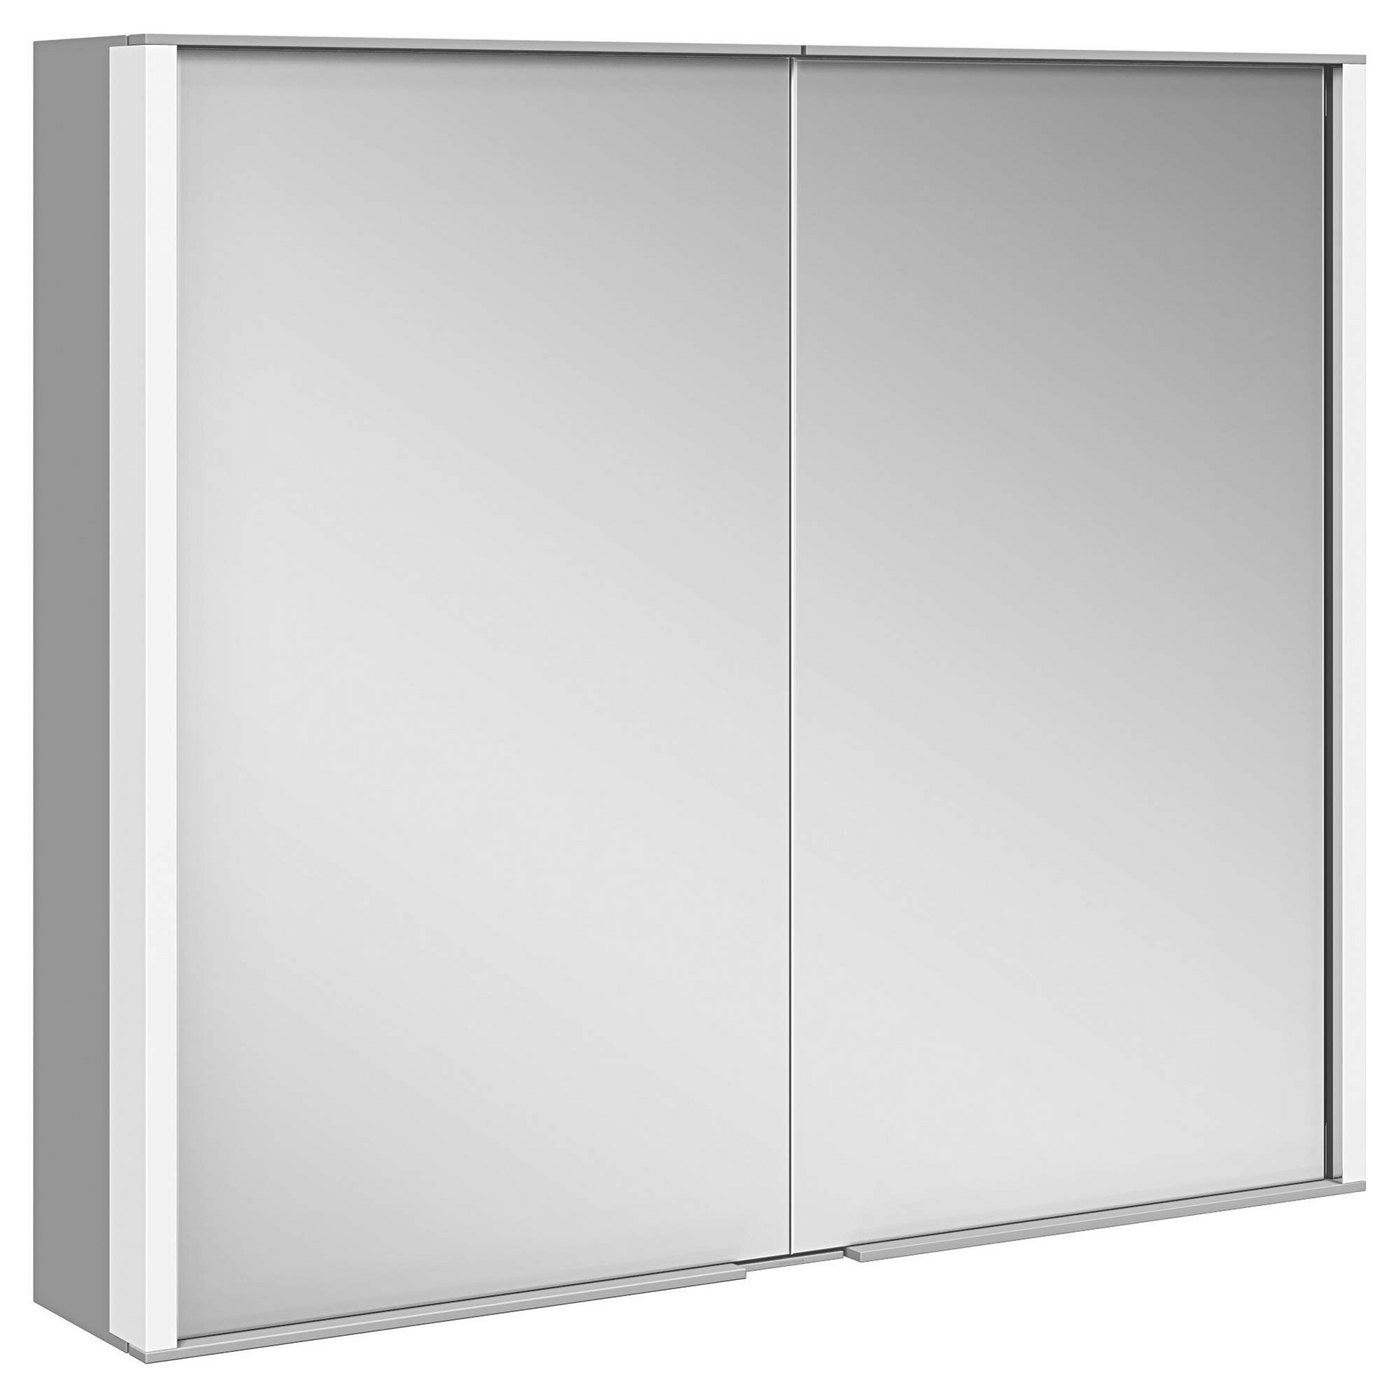 Keuco Spiegelschrank Royal Match (Badezimmerspiegelschrank mit Beleuchtung LED) mit Steckdose, dimmbar, Aluminium-Korpus, 2-türig, 80 cm von Keuco